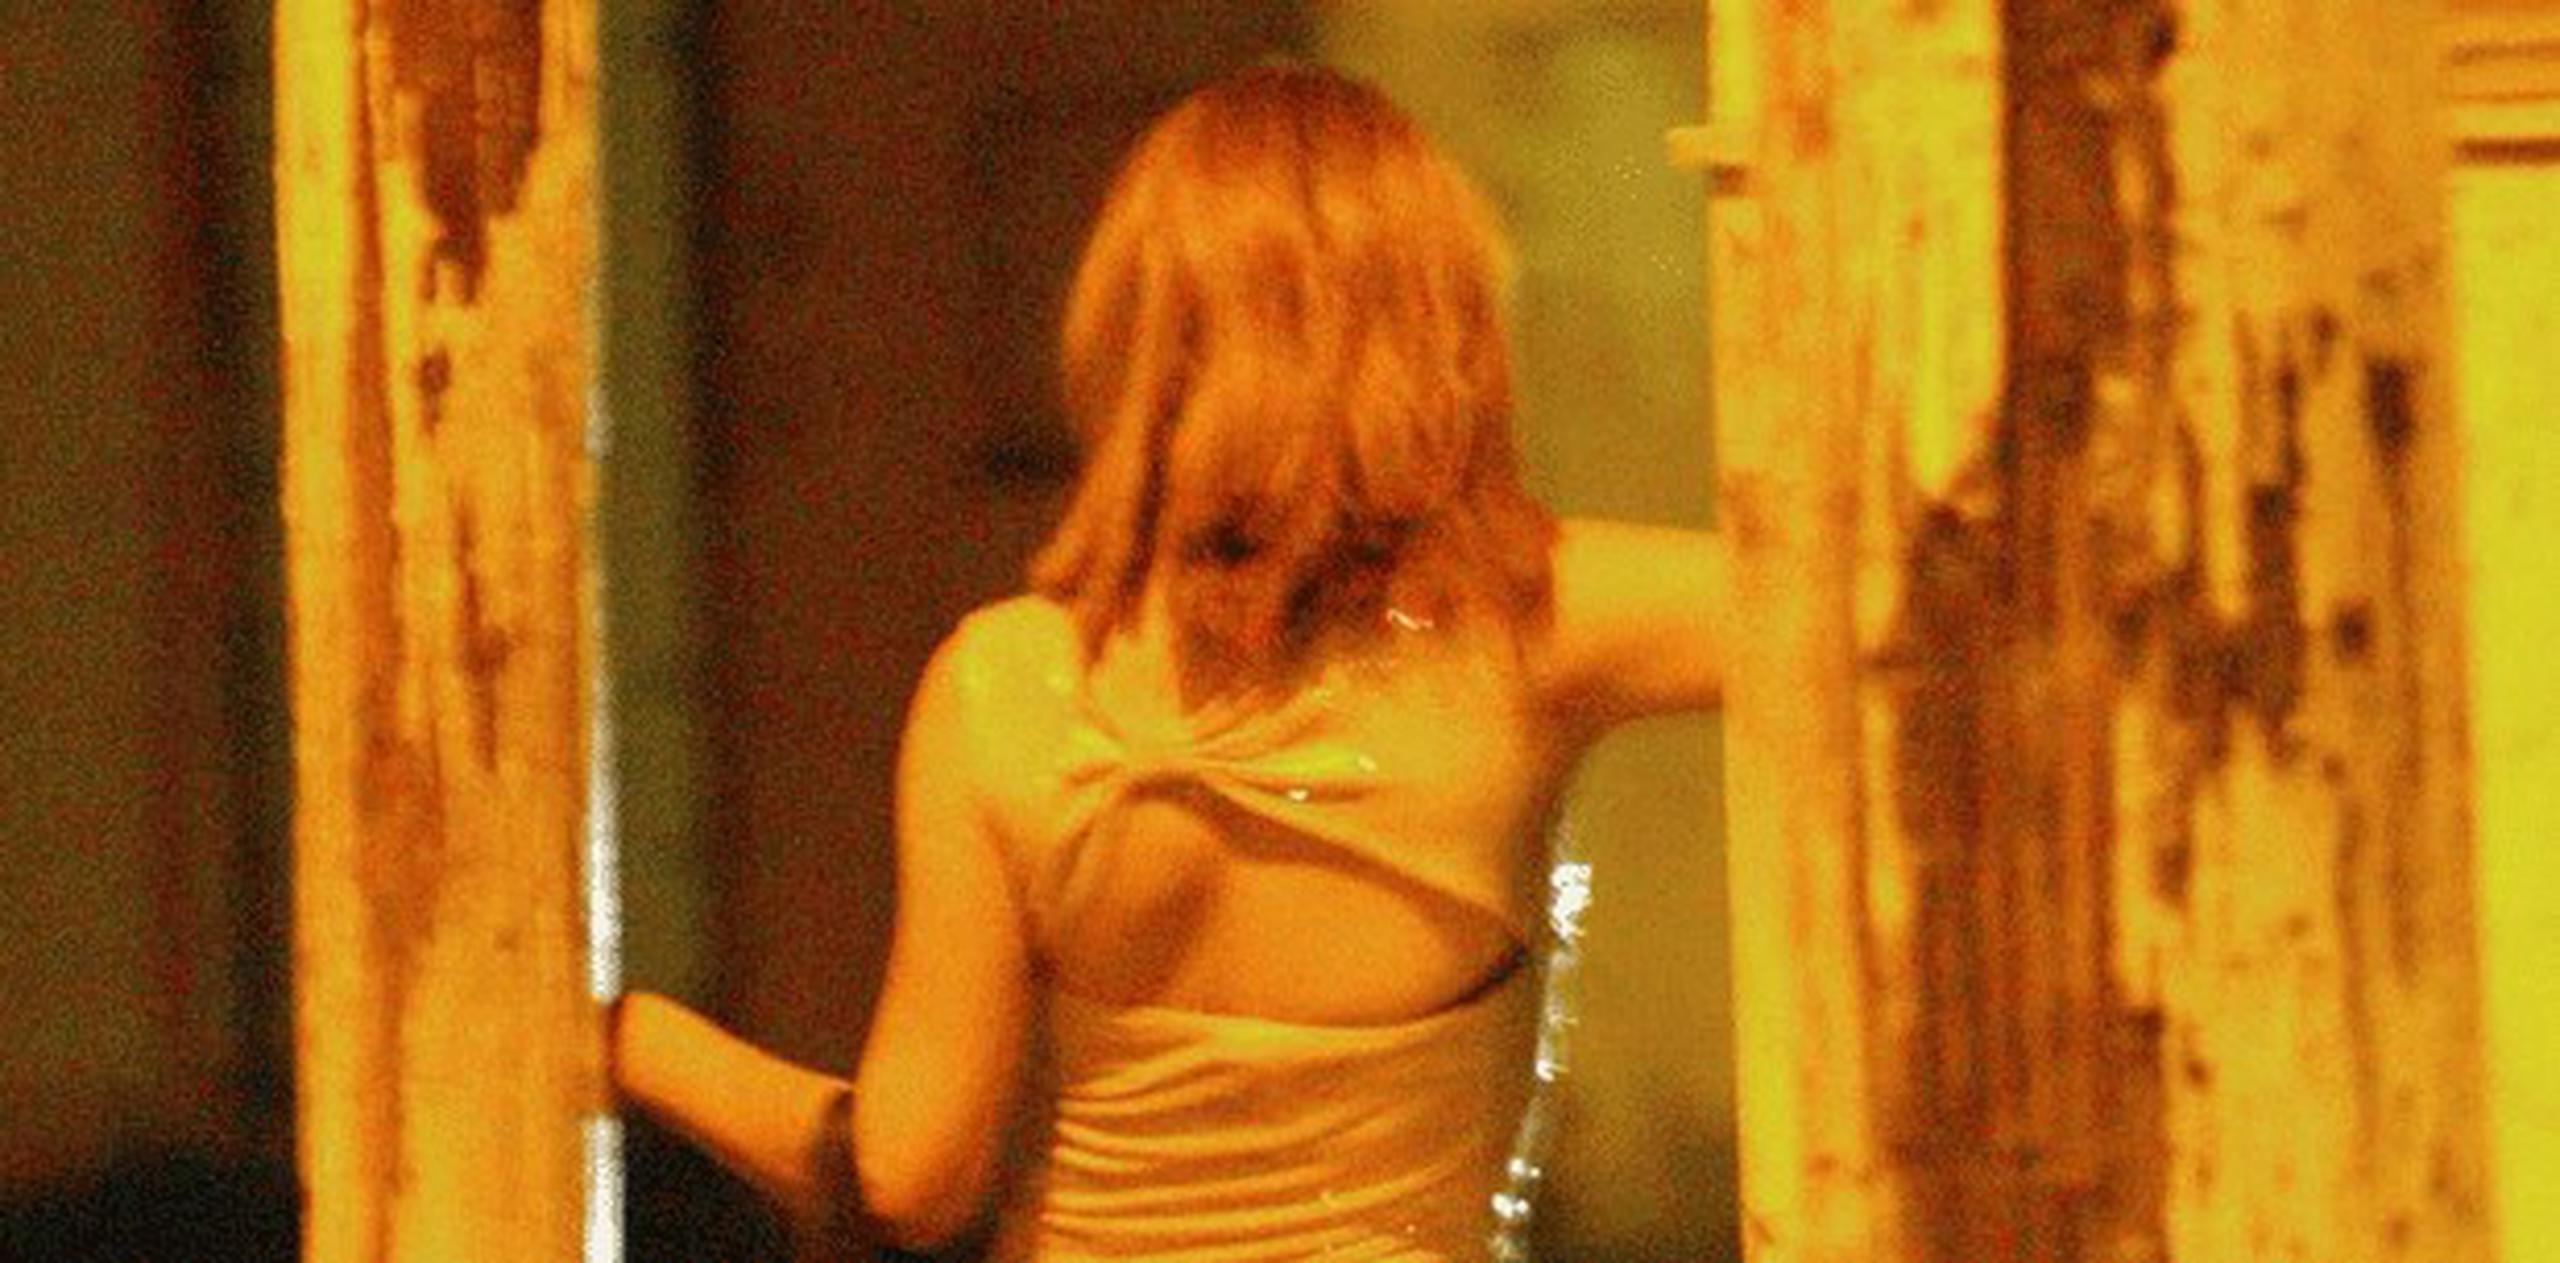 Siete agentes admitieron haber acudido a fiestas con prostitutas. La DEA emitió suspensiones que iban de los dos a los 10 días, y un agente fue absuelto. (Archivo)